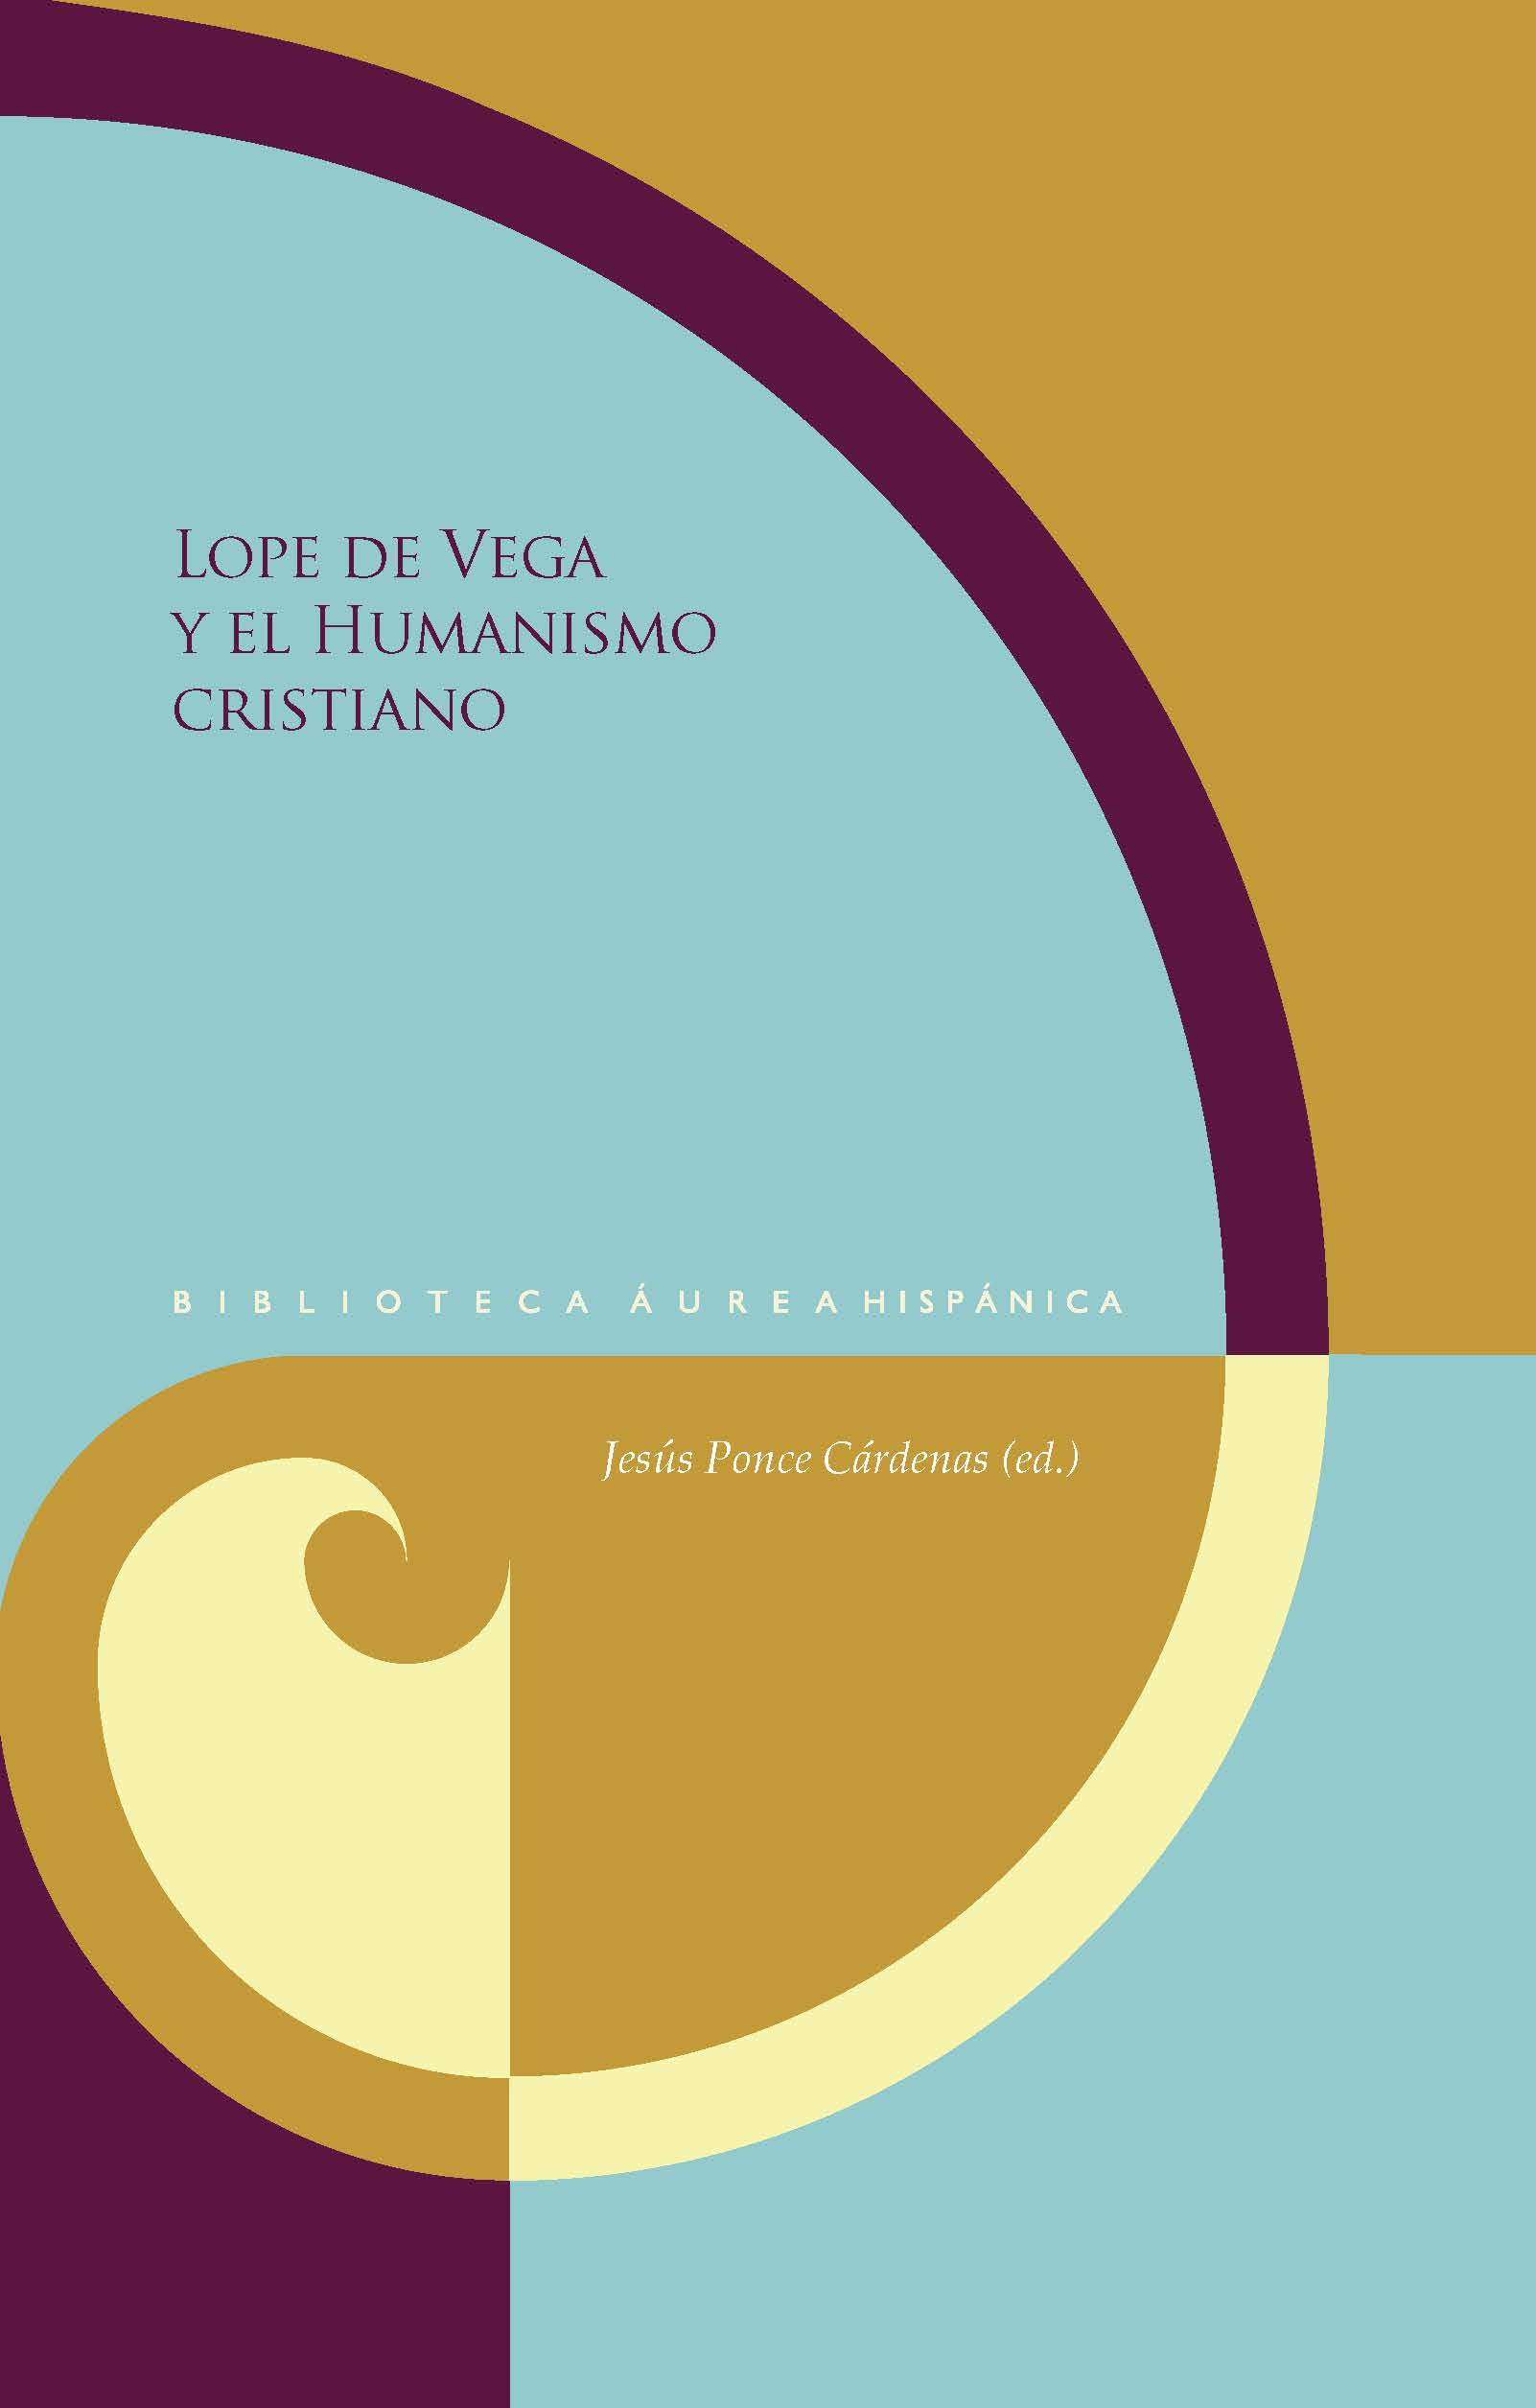 Imagen de portada del libro Lope de Vega y el humanismo cristiano